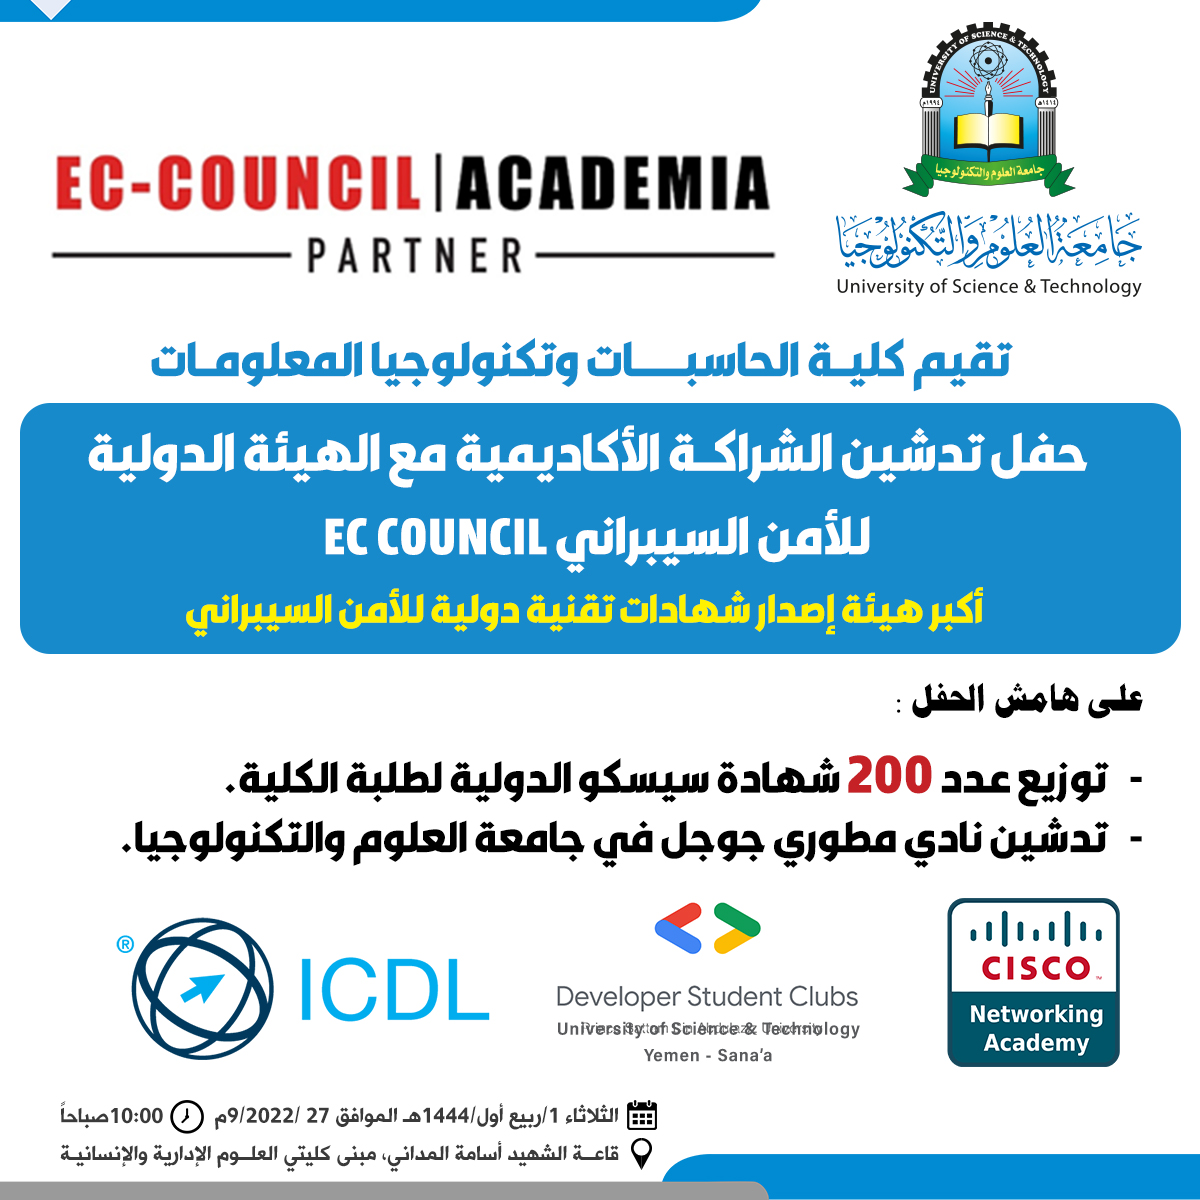 حفل تدشين الشراكة الأكاديمية مع الهيئة الدولية للأمن السيبراني EC COUNCIL